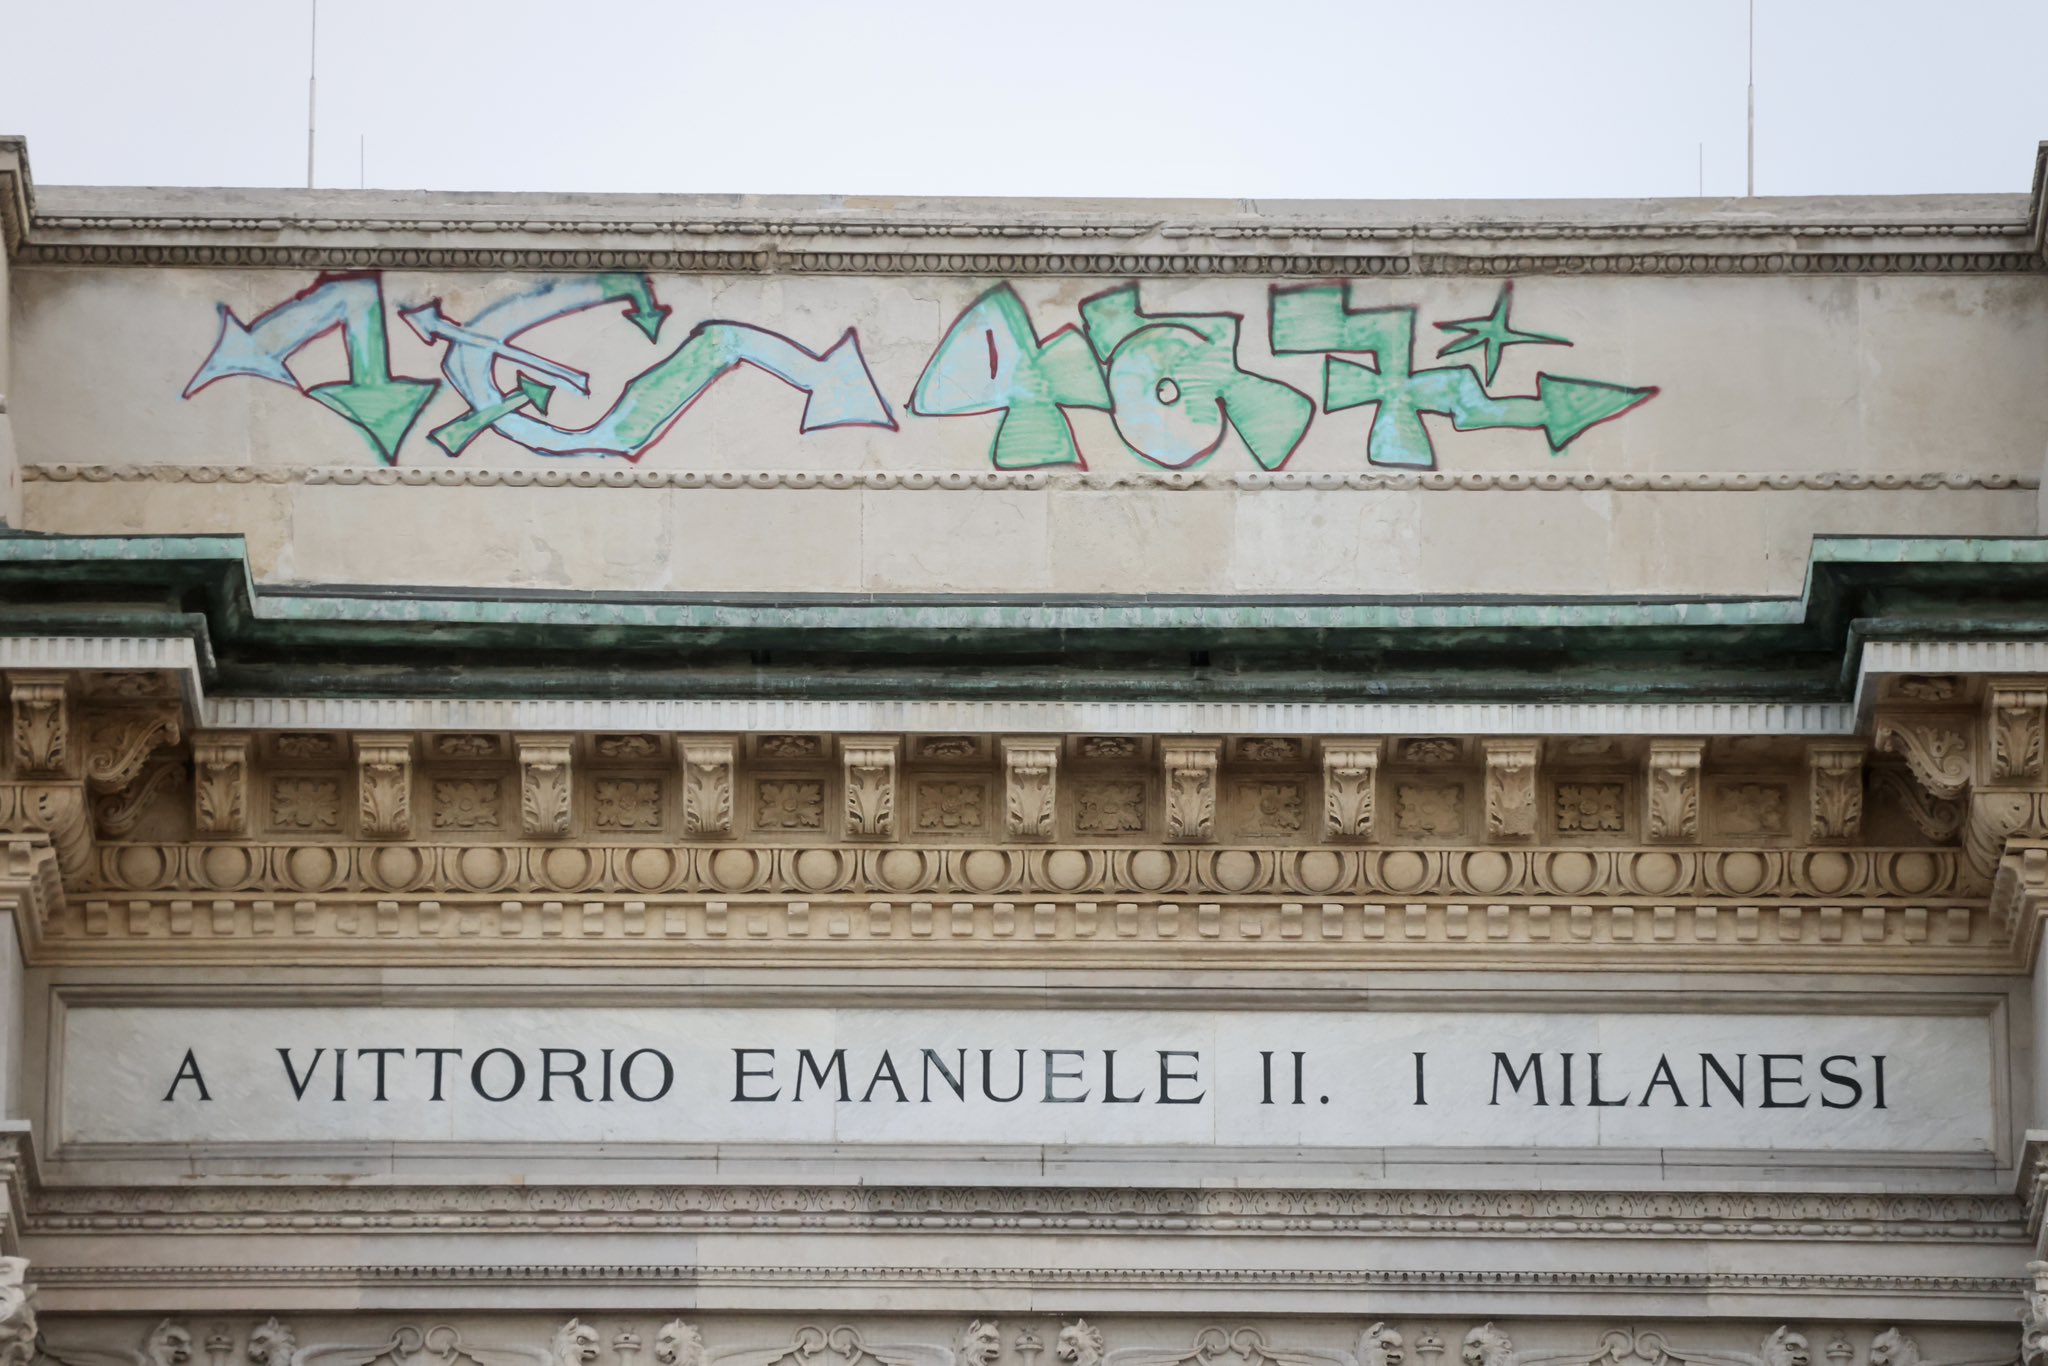 Cronaca | Milano vandalizzata. Sgarbi: “I writer hanno perso l’occasione per suicidarsi”